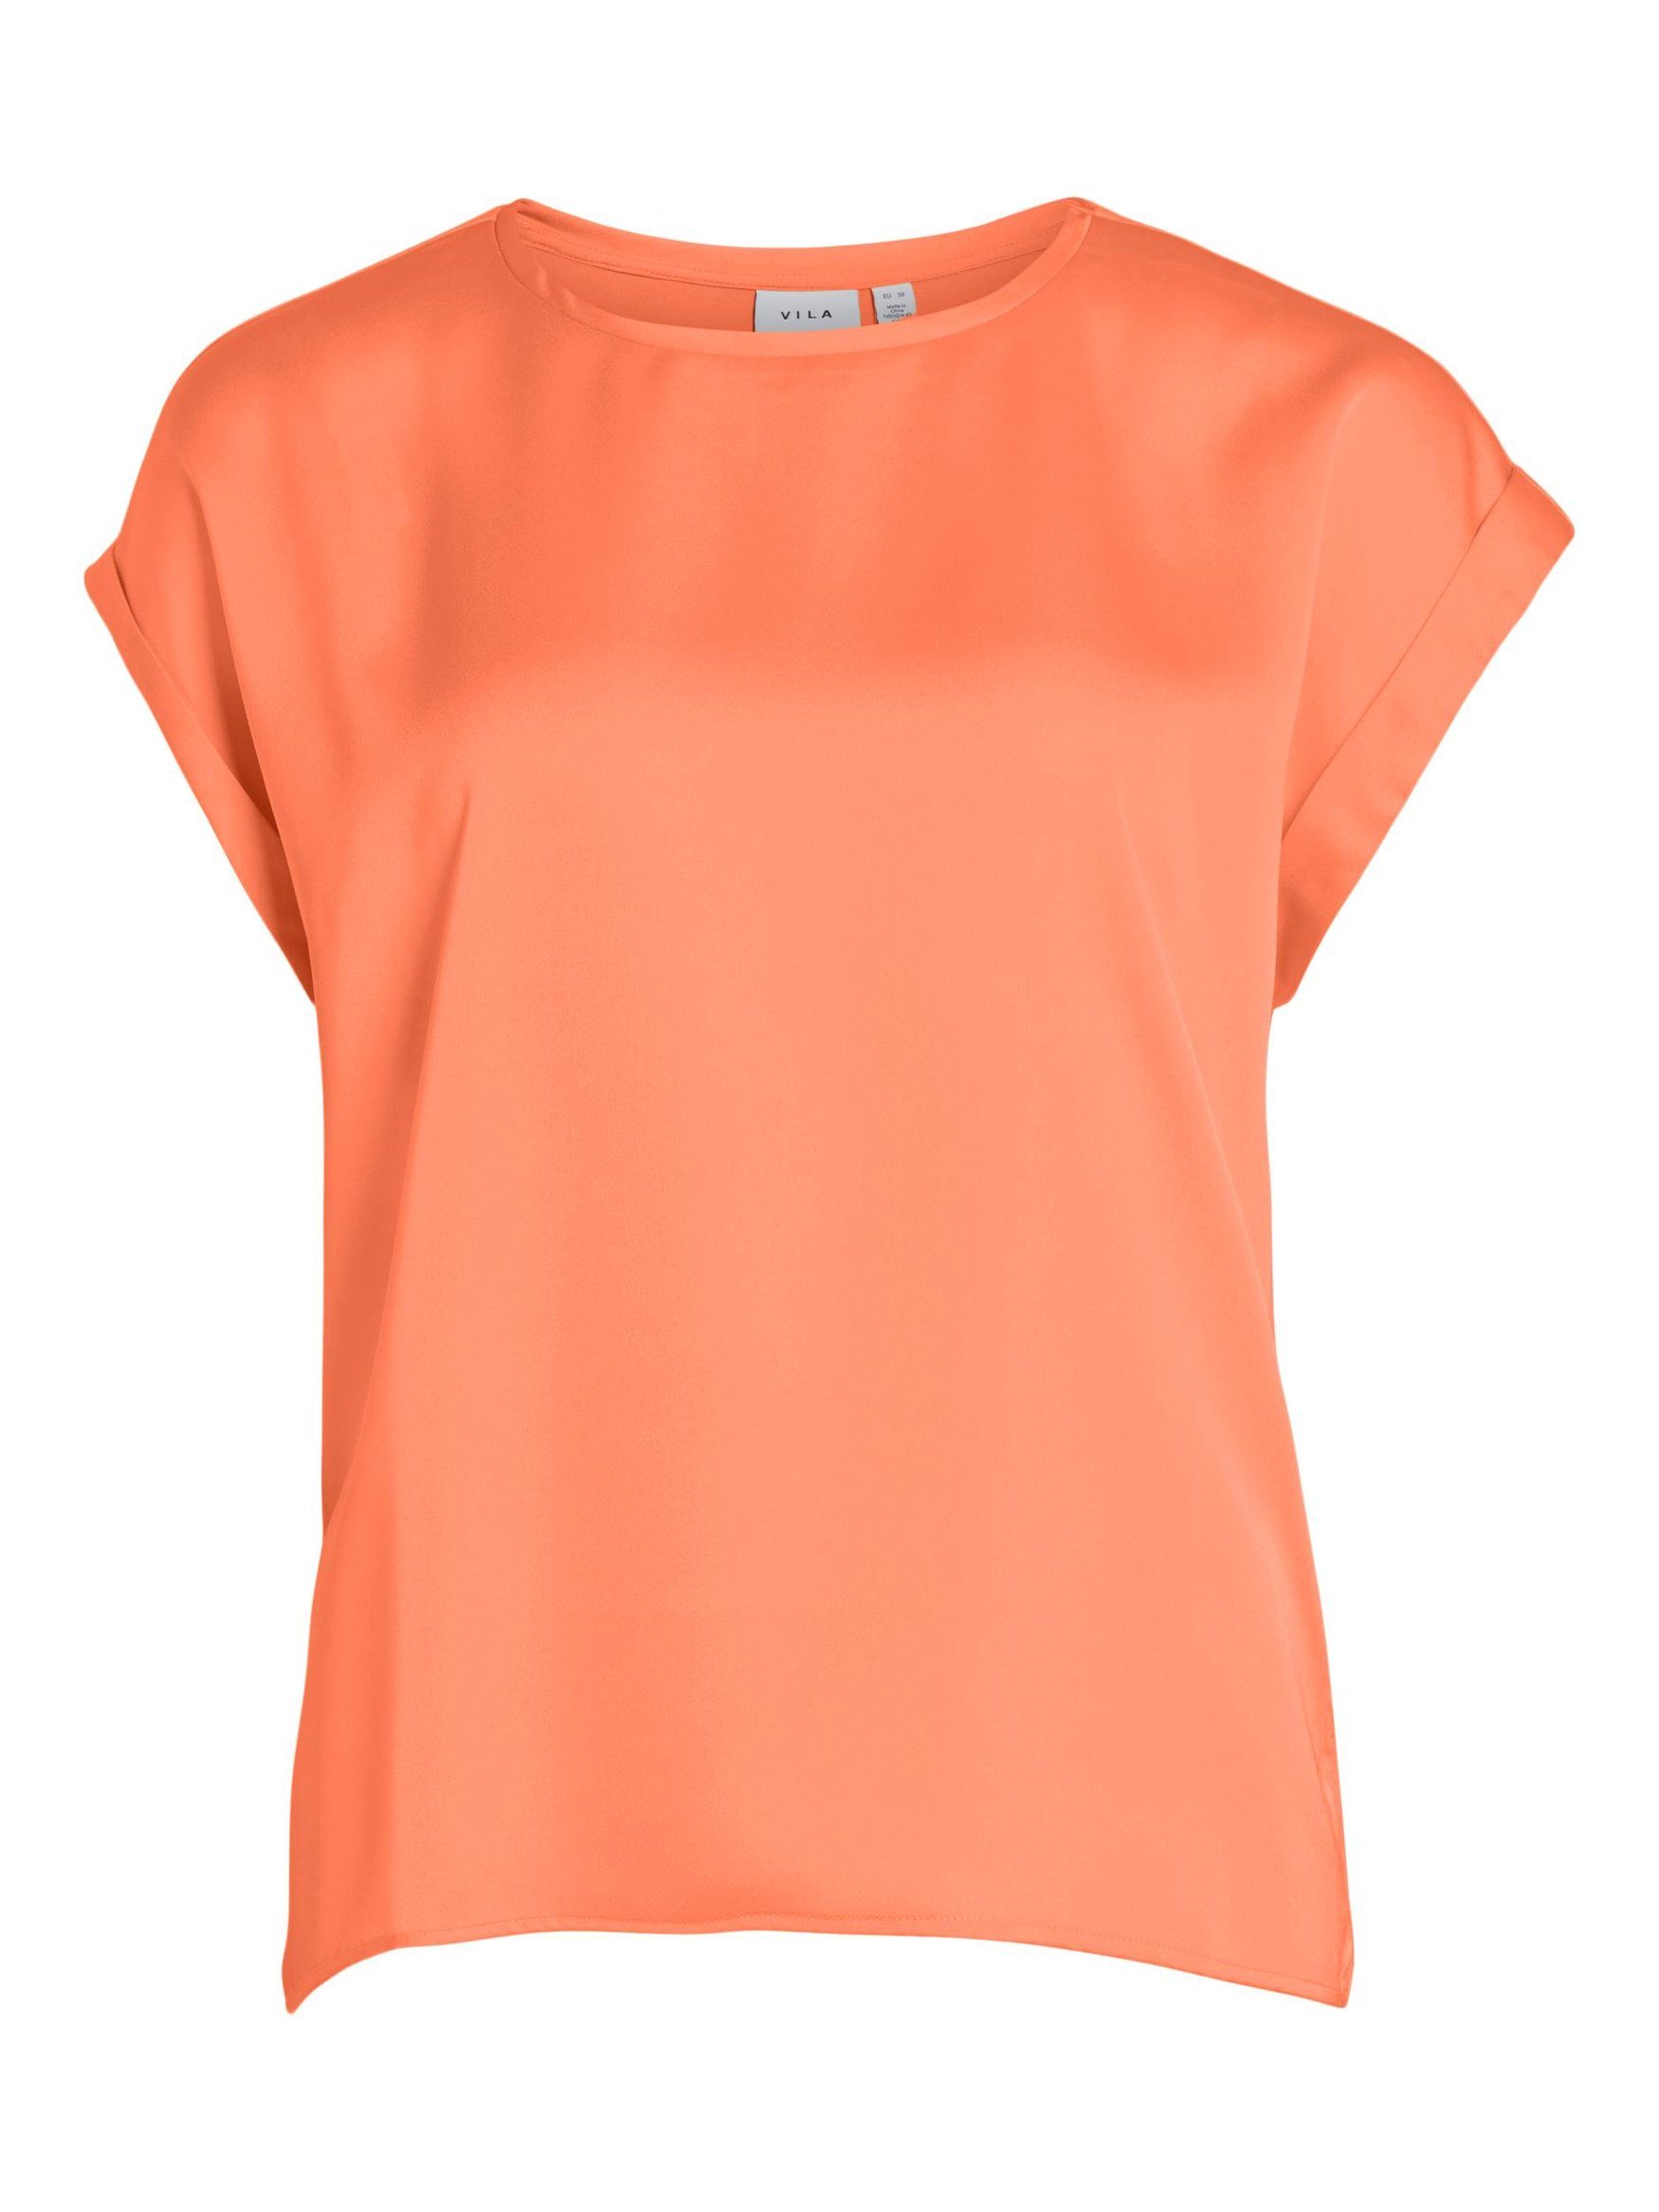 Vila T-Shirt Satain Glänzend 4599 in Top VIELLETTE Basic Blusen T-Shirt Neon Orange Kurzarm